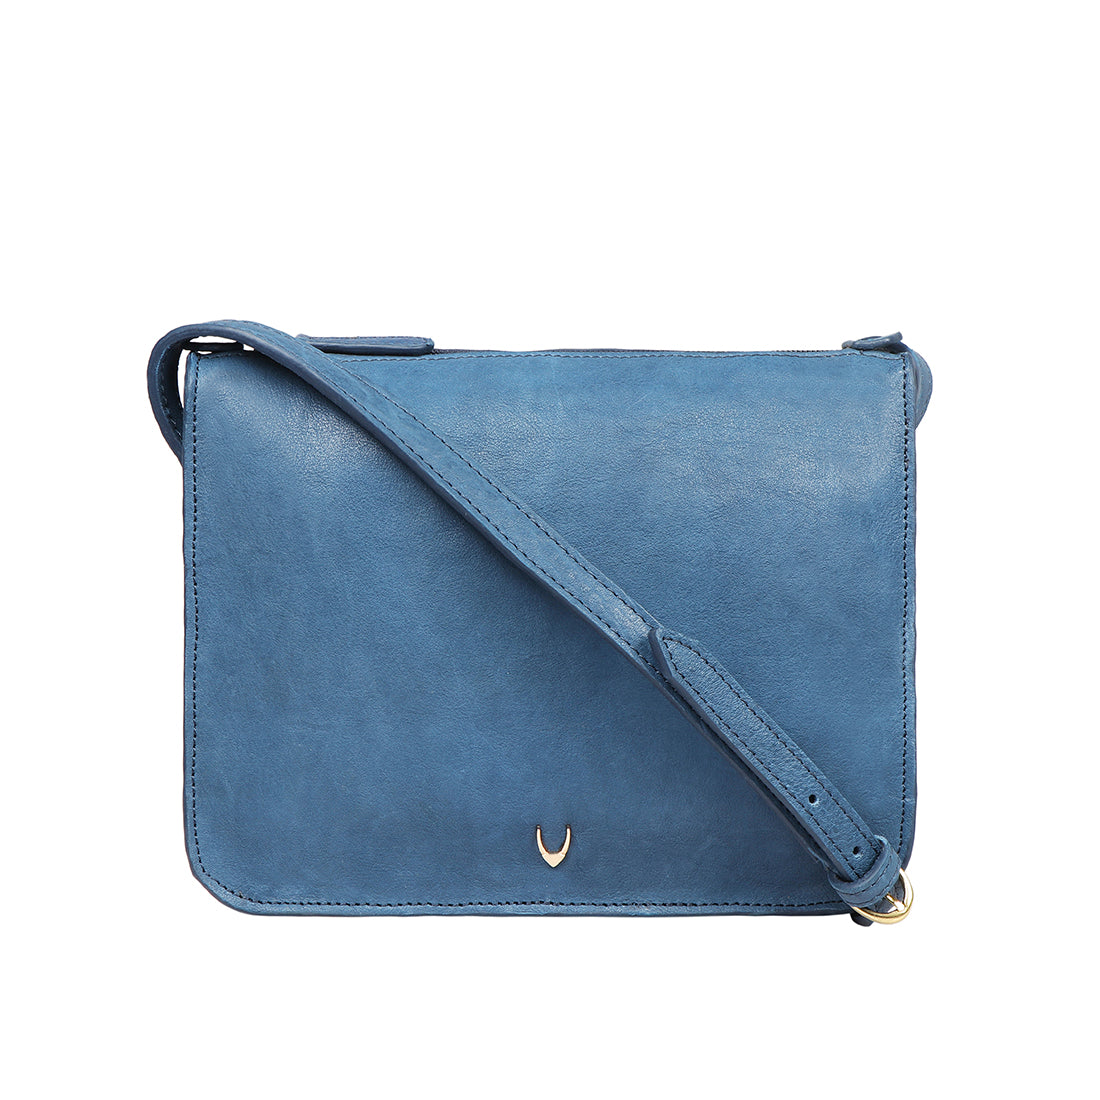 Hidesign East India Leather Shoulder Handbag Purse Dark Navy Blue